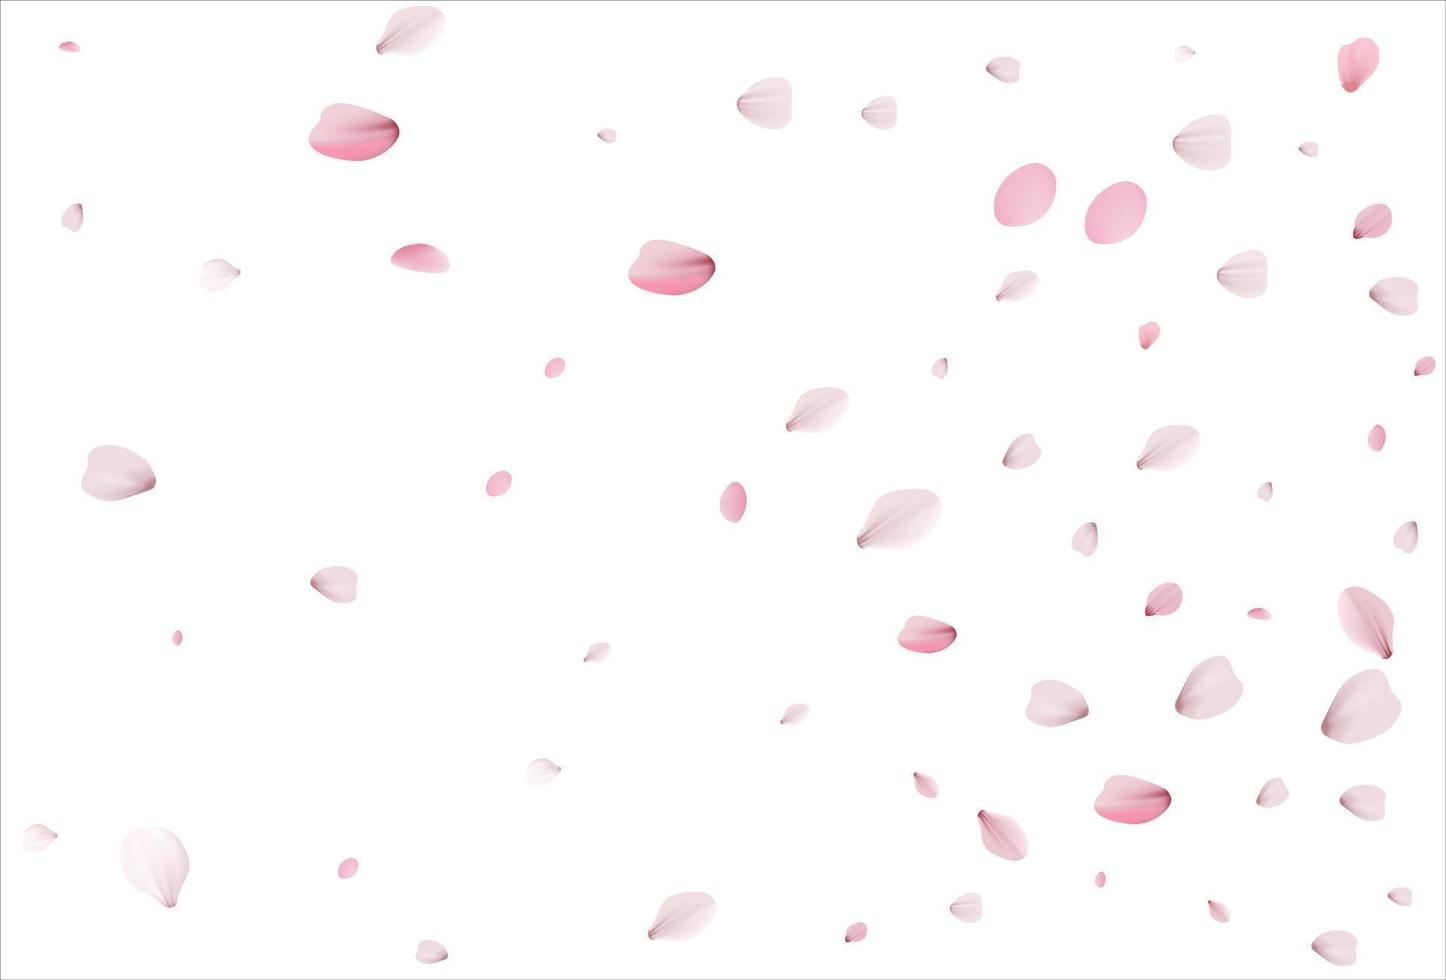 sfondo di petali di ciliegio. sfondo di petali di sakura. vettore